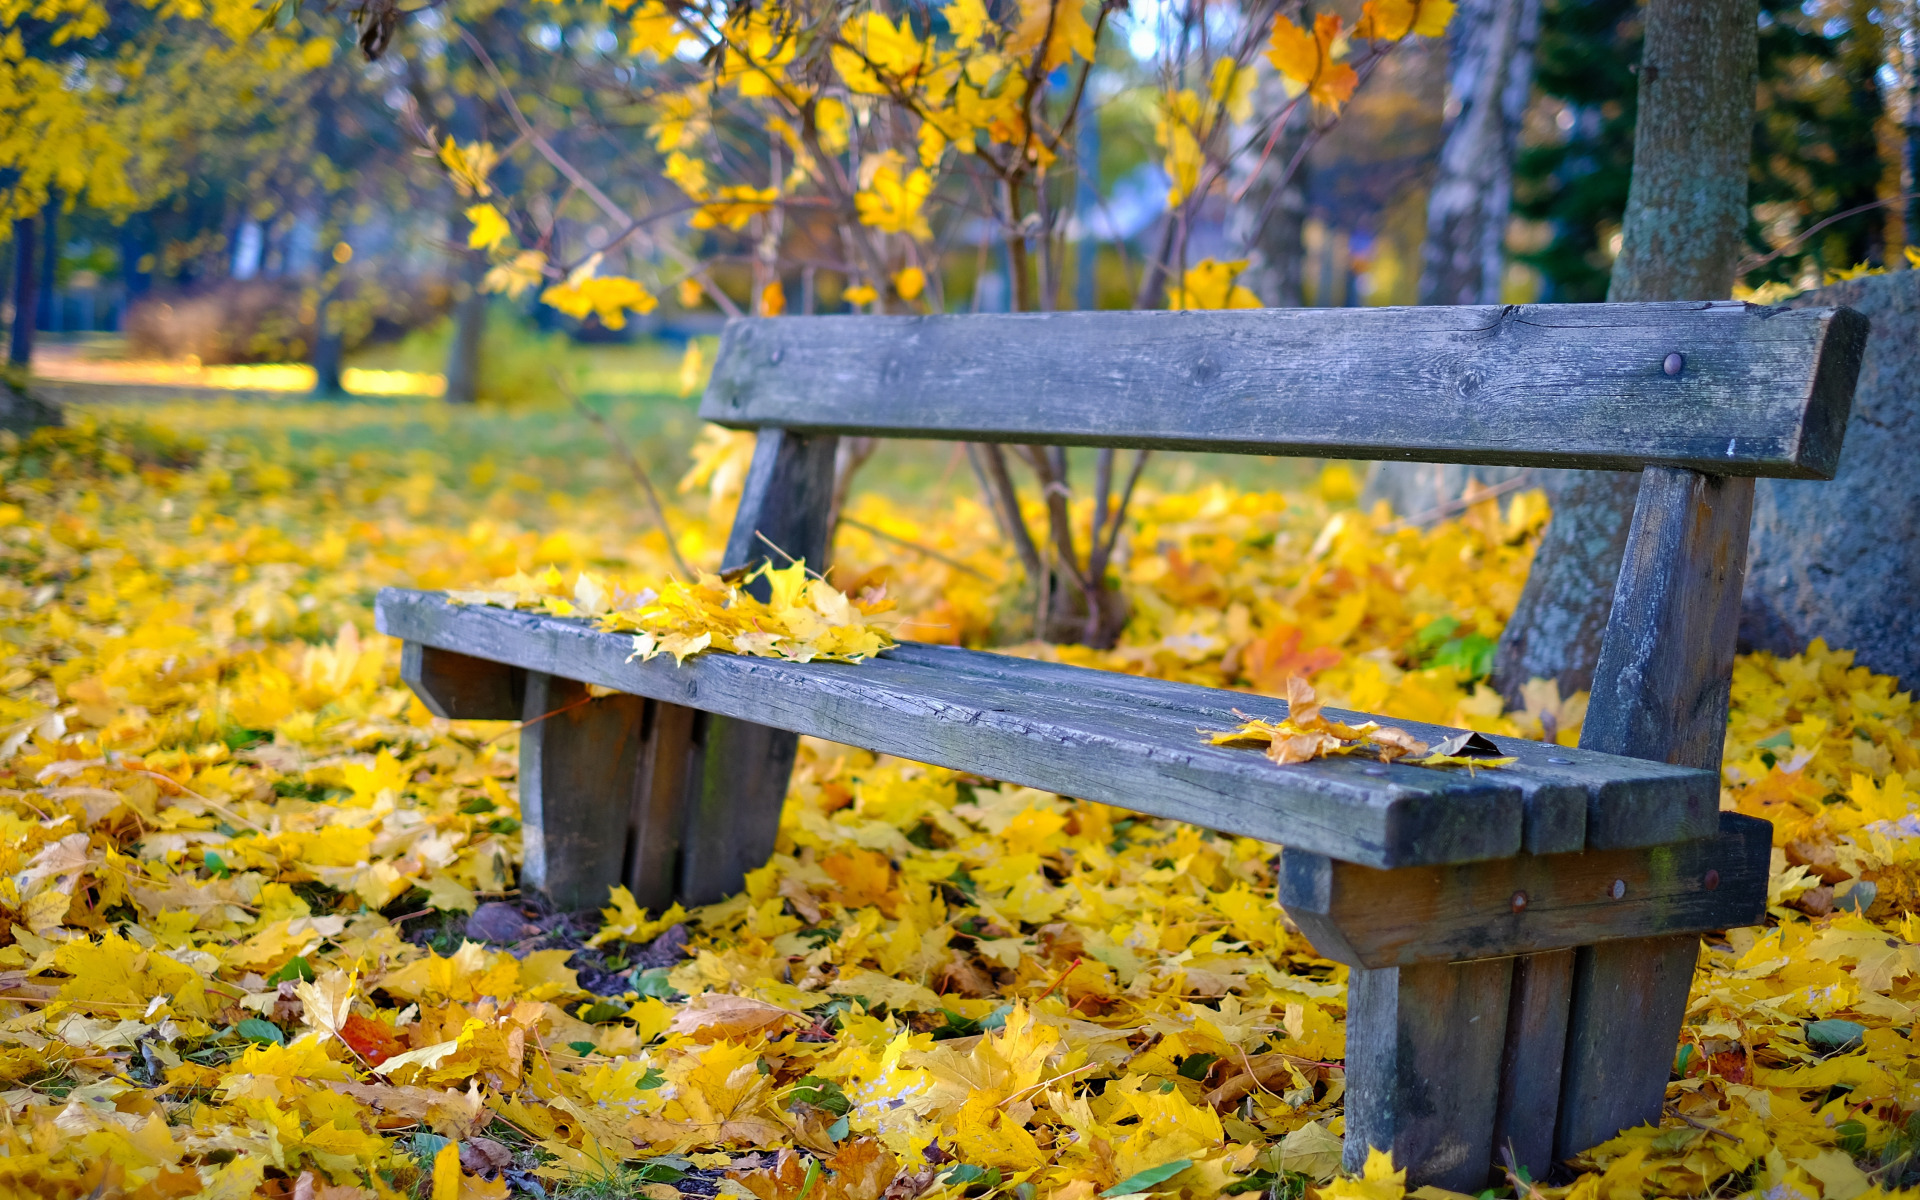 осенний сад промокшая скамейка и листья подметает